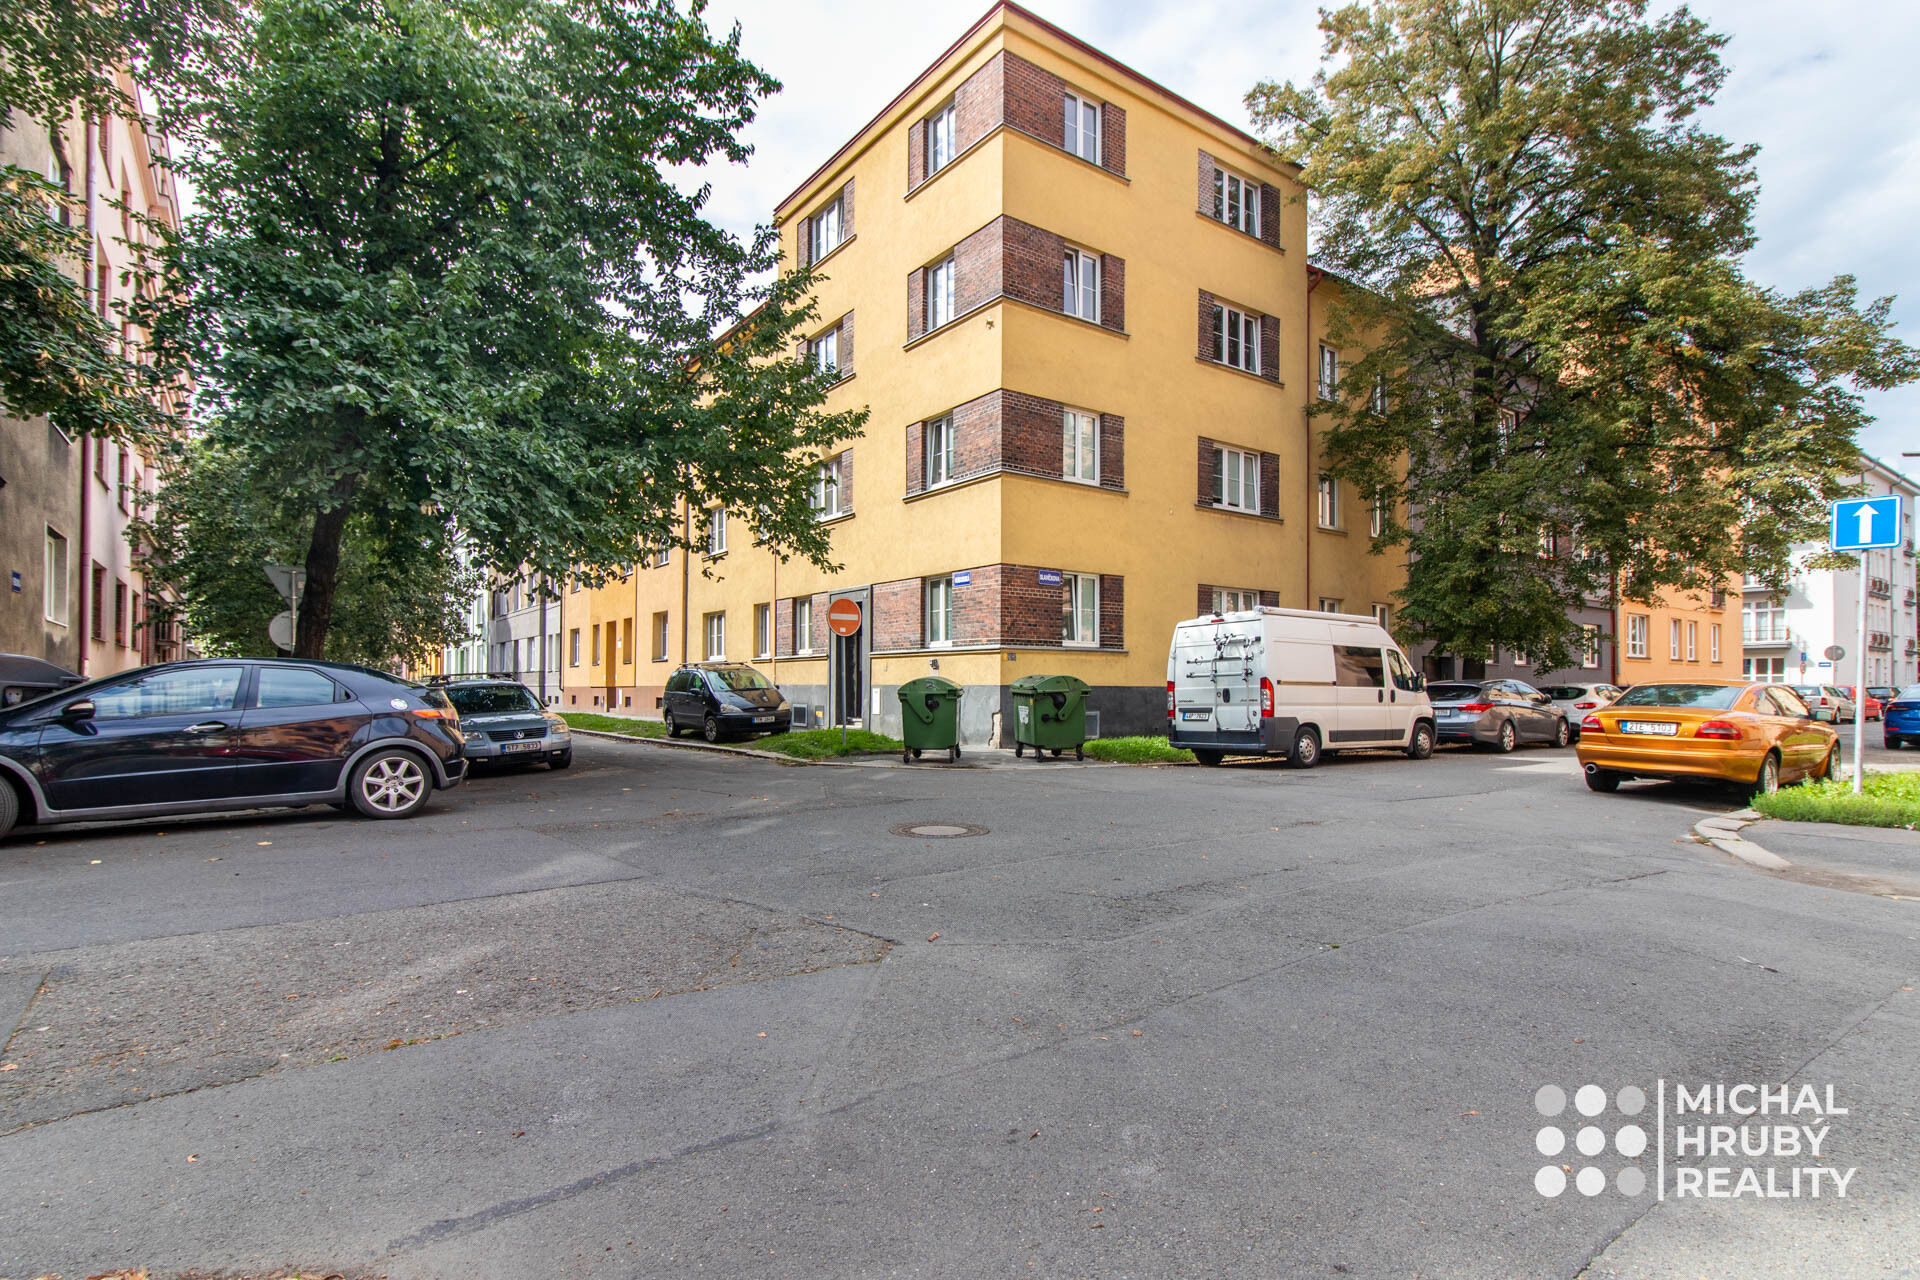 Prodej činžovního domu se 7 byty po rekonstrukci v centru Ostravy